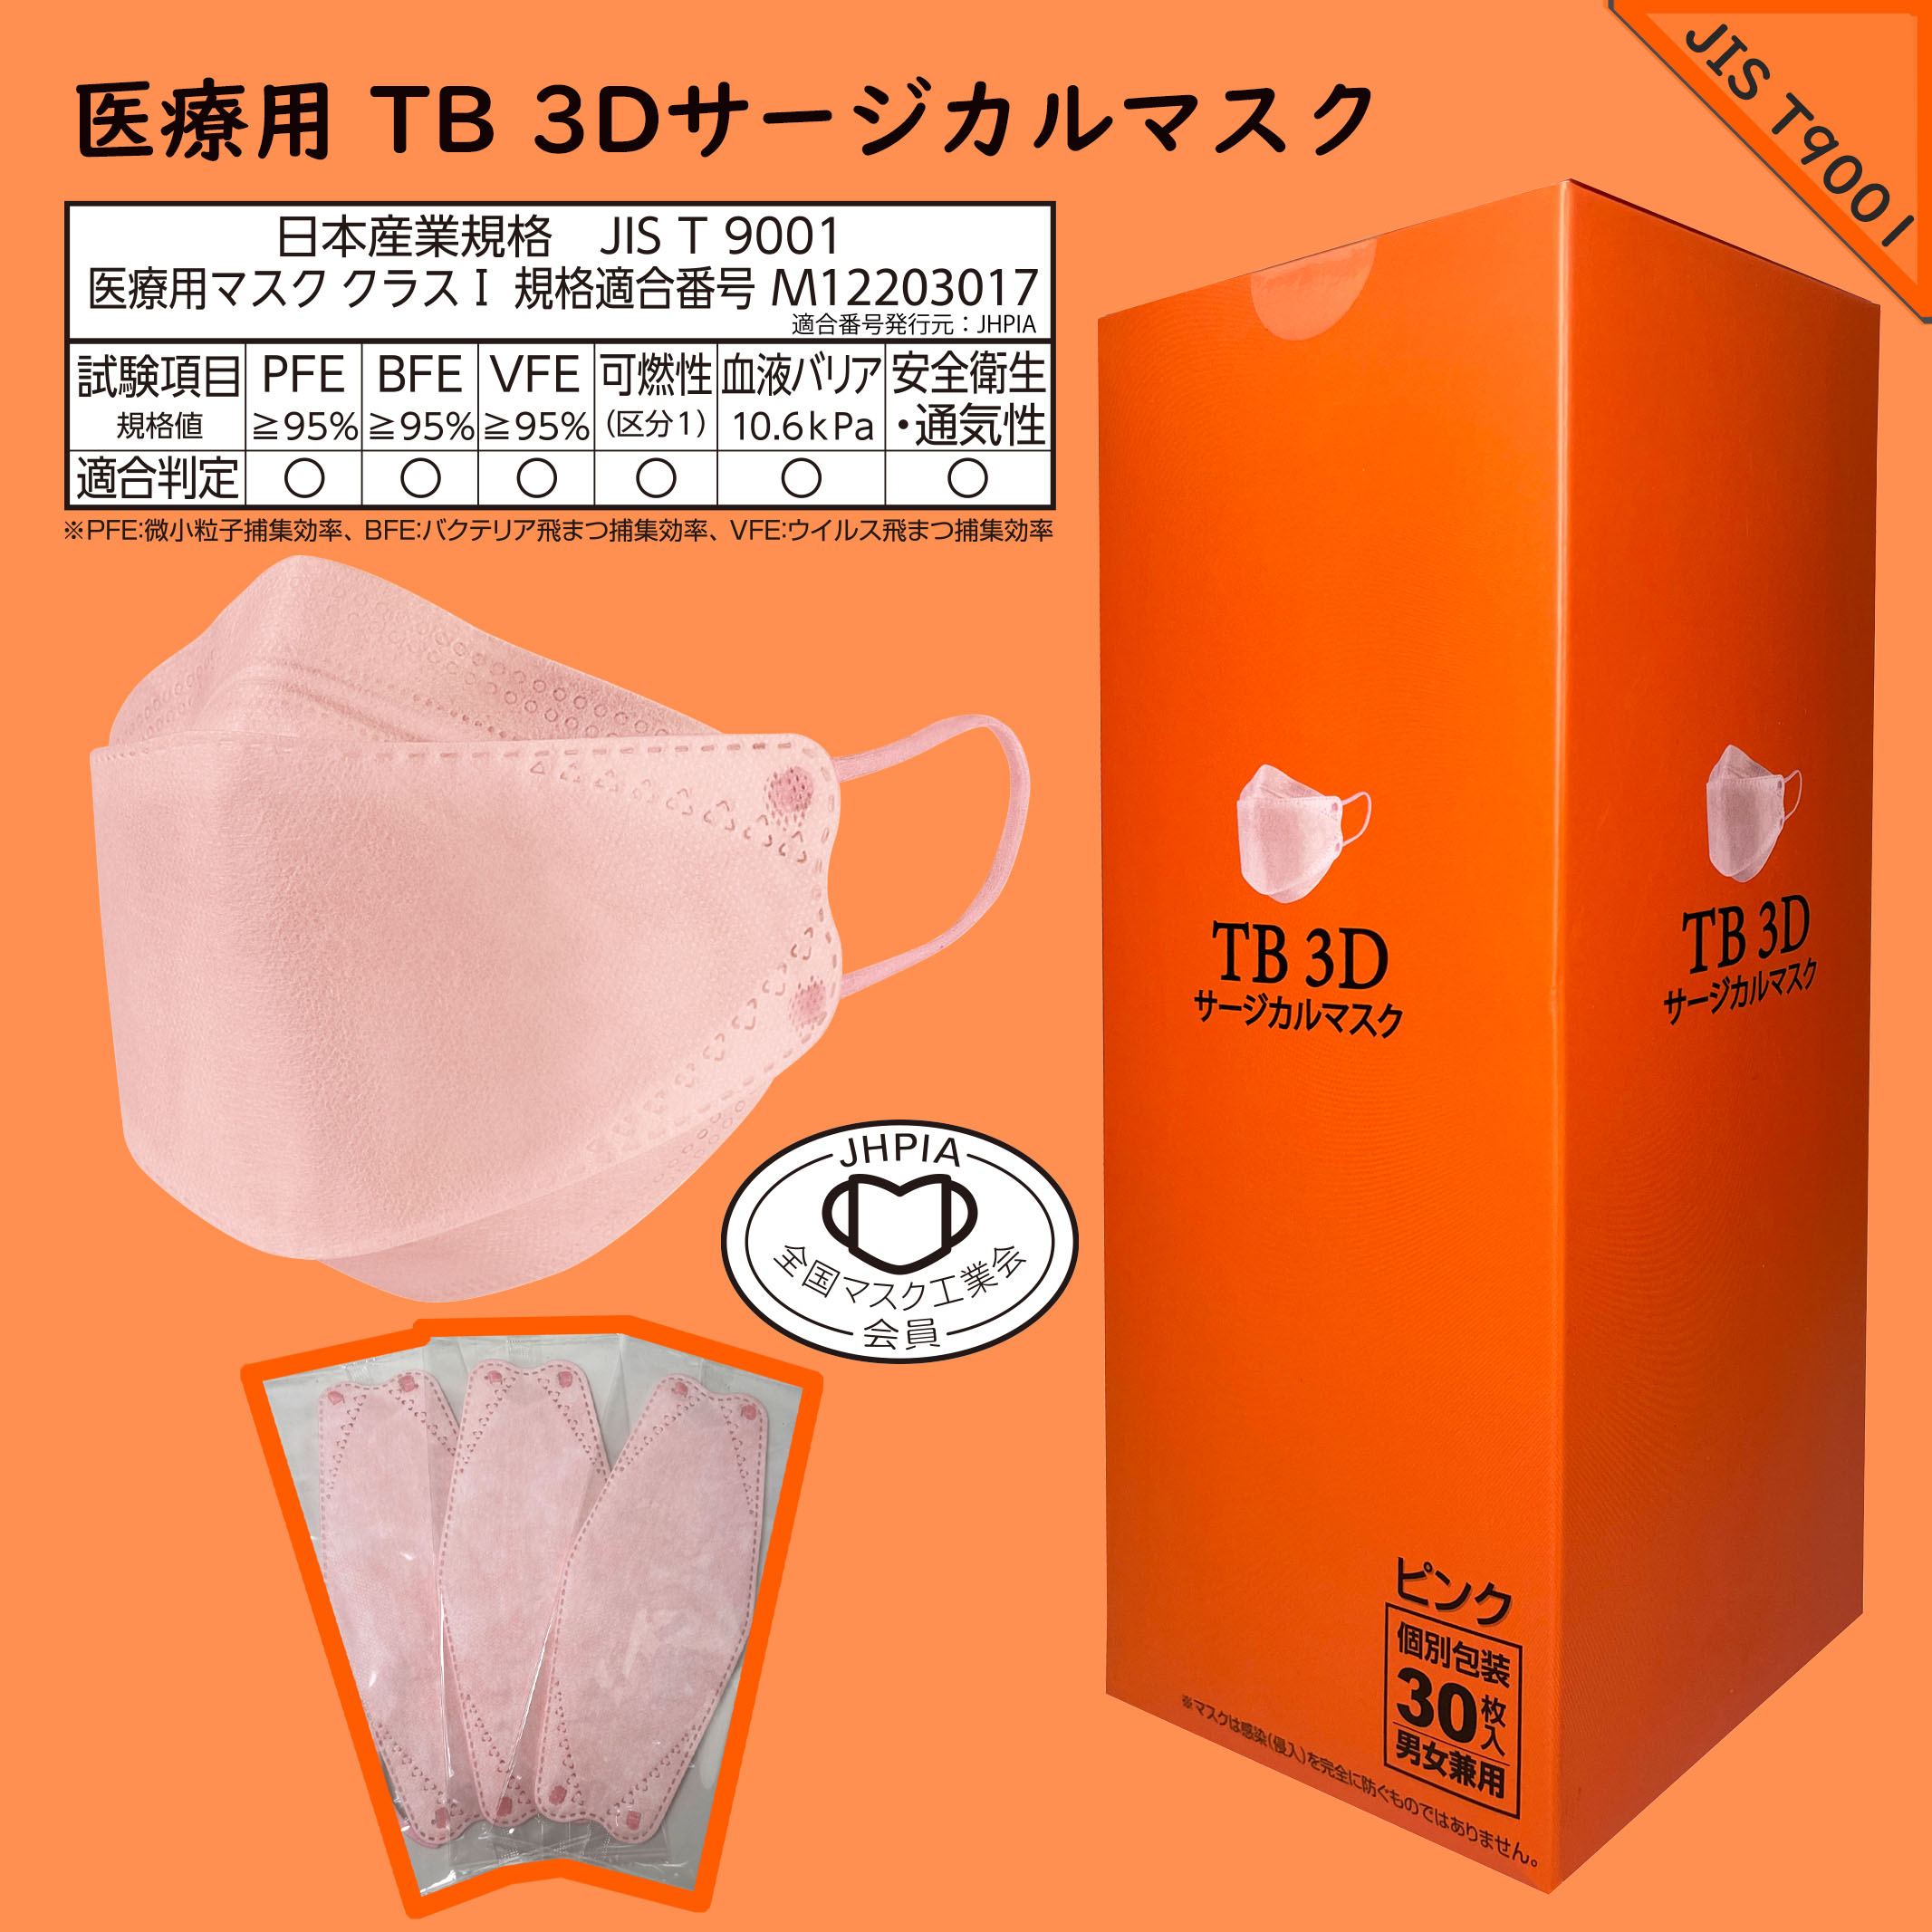 つばさ(Tsubasa) TB 3Dサージカルマスク・個包装・3層構造 (JIS T9001適合審査合格品) 医療用立体マスク ピンク/フリーサイズ 1BOX-30枚入り